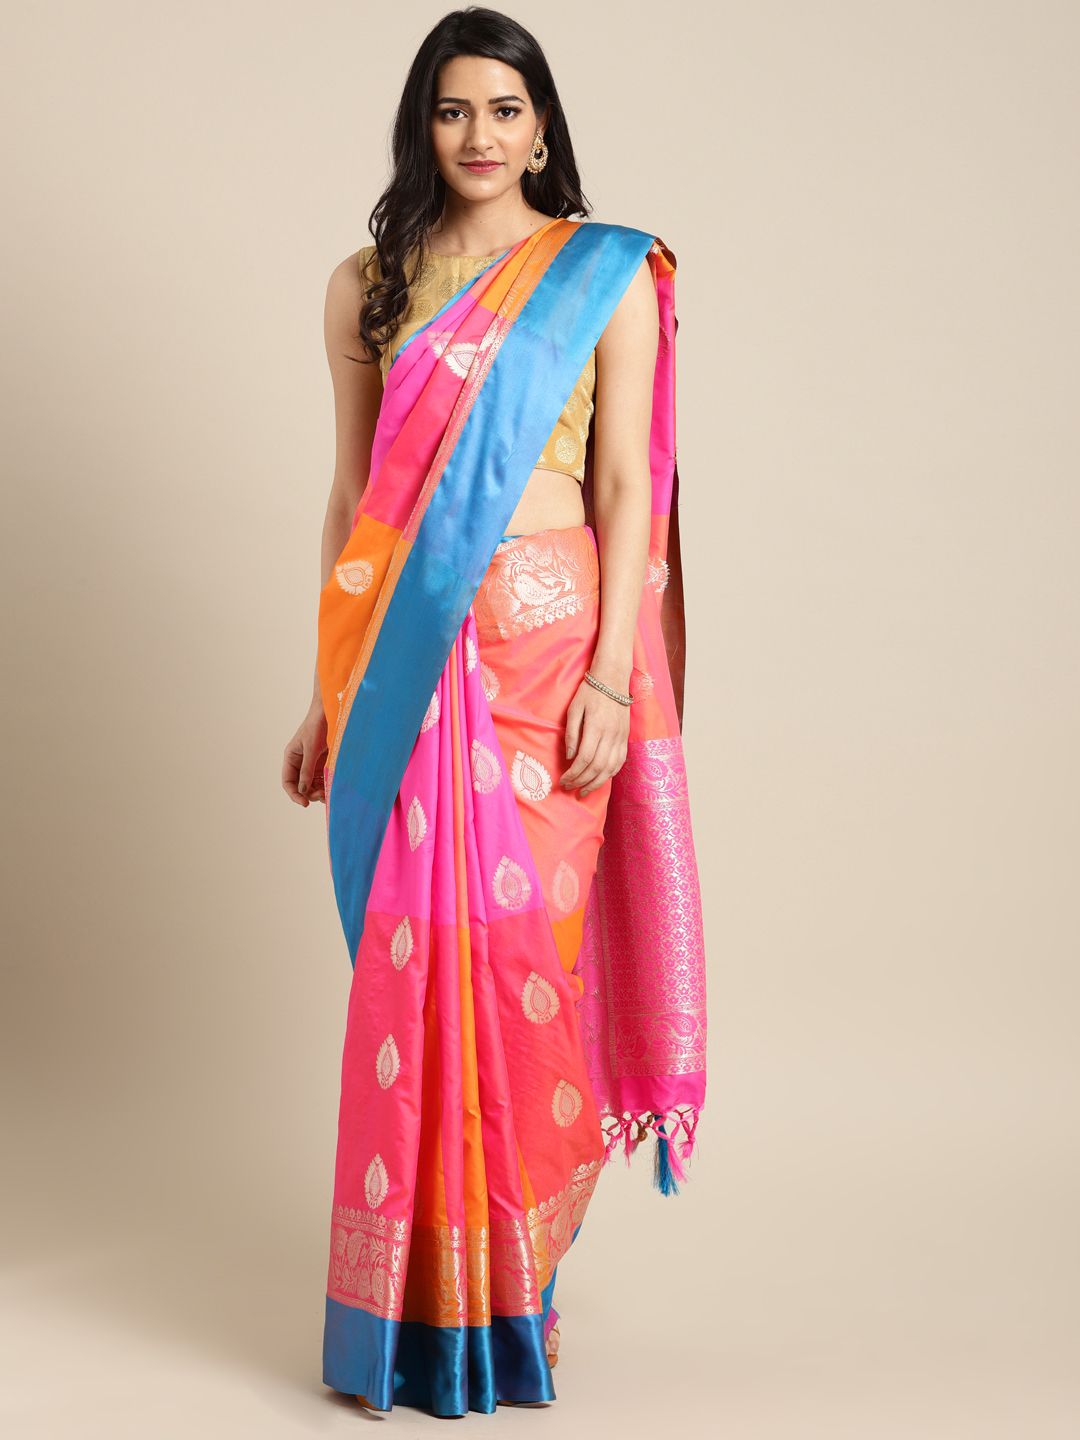 Varkala Silk Sarees Pink & Mustard Yellow Pure Silk Colourblocked Banarasi Saree Price in India